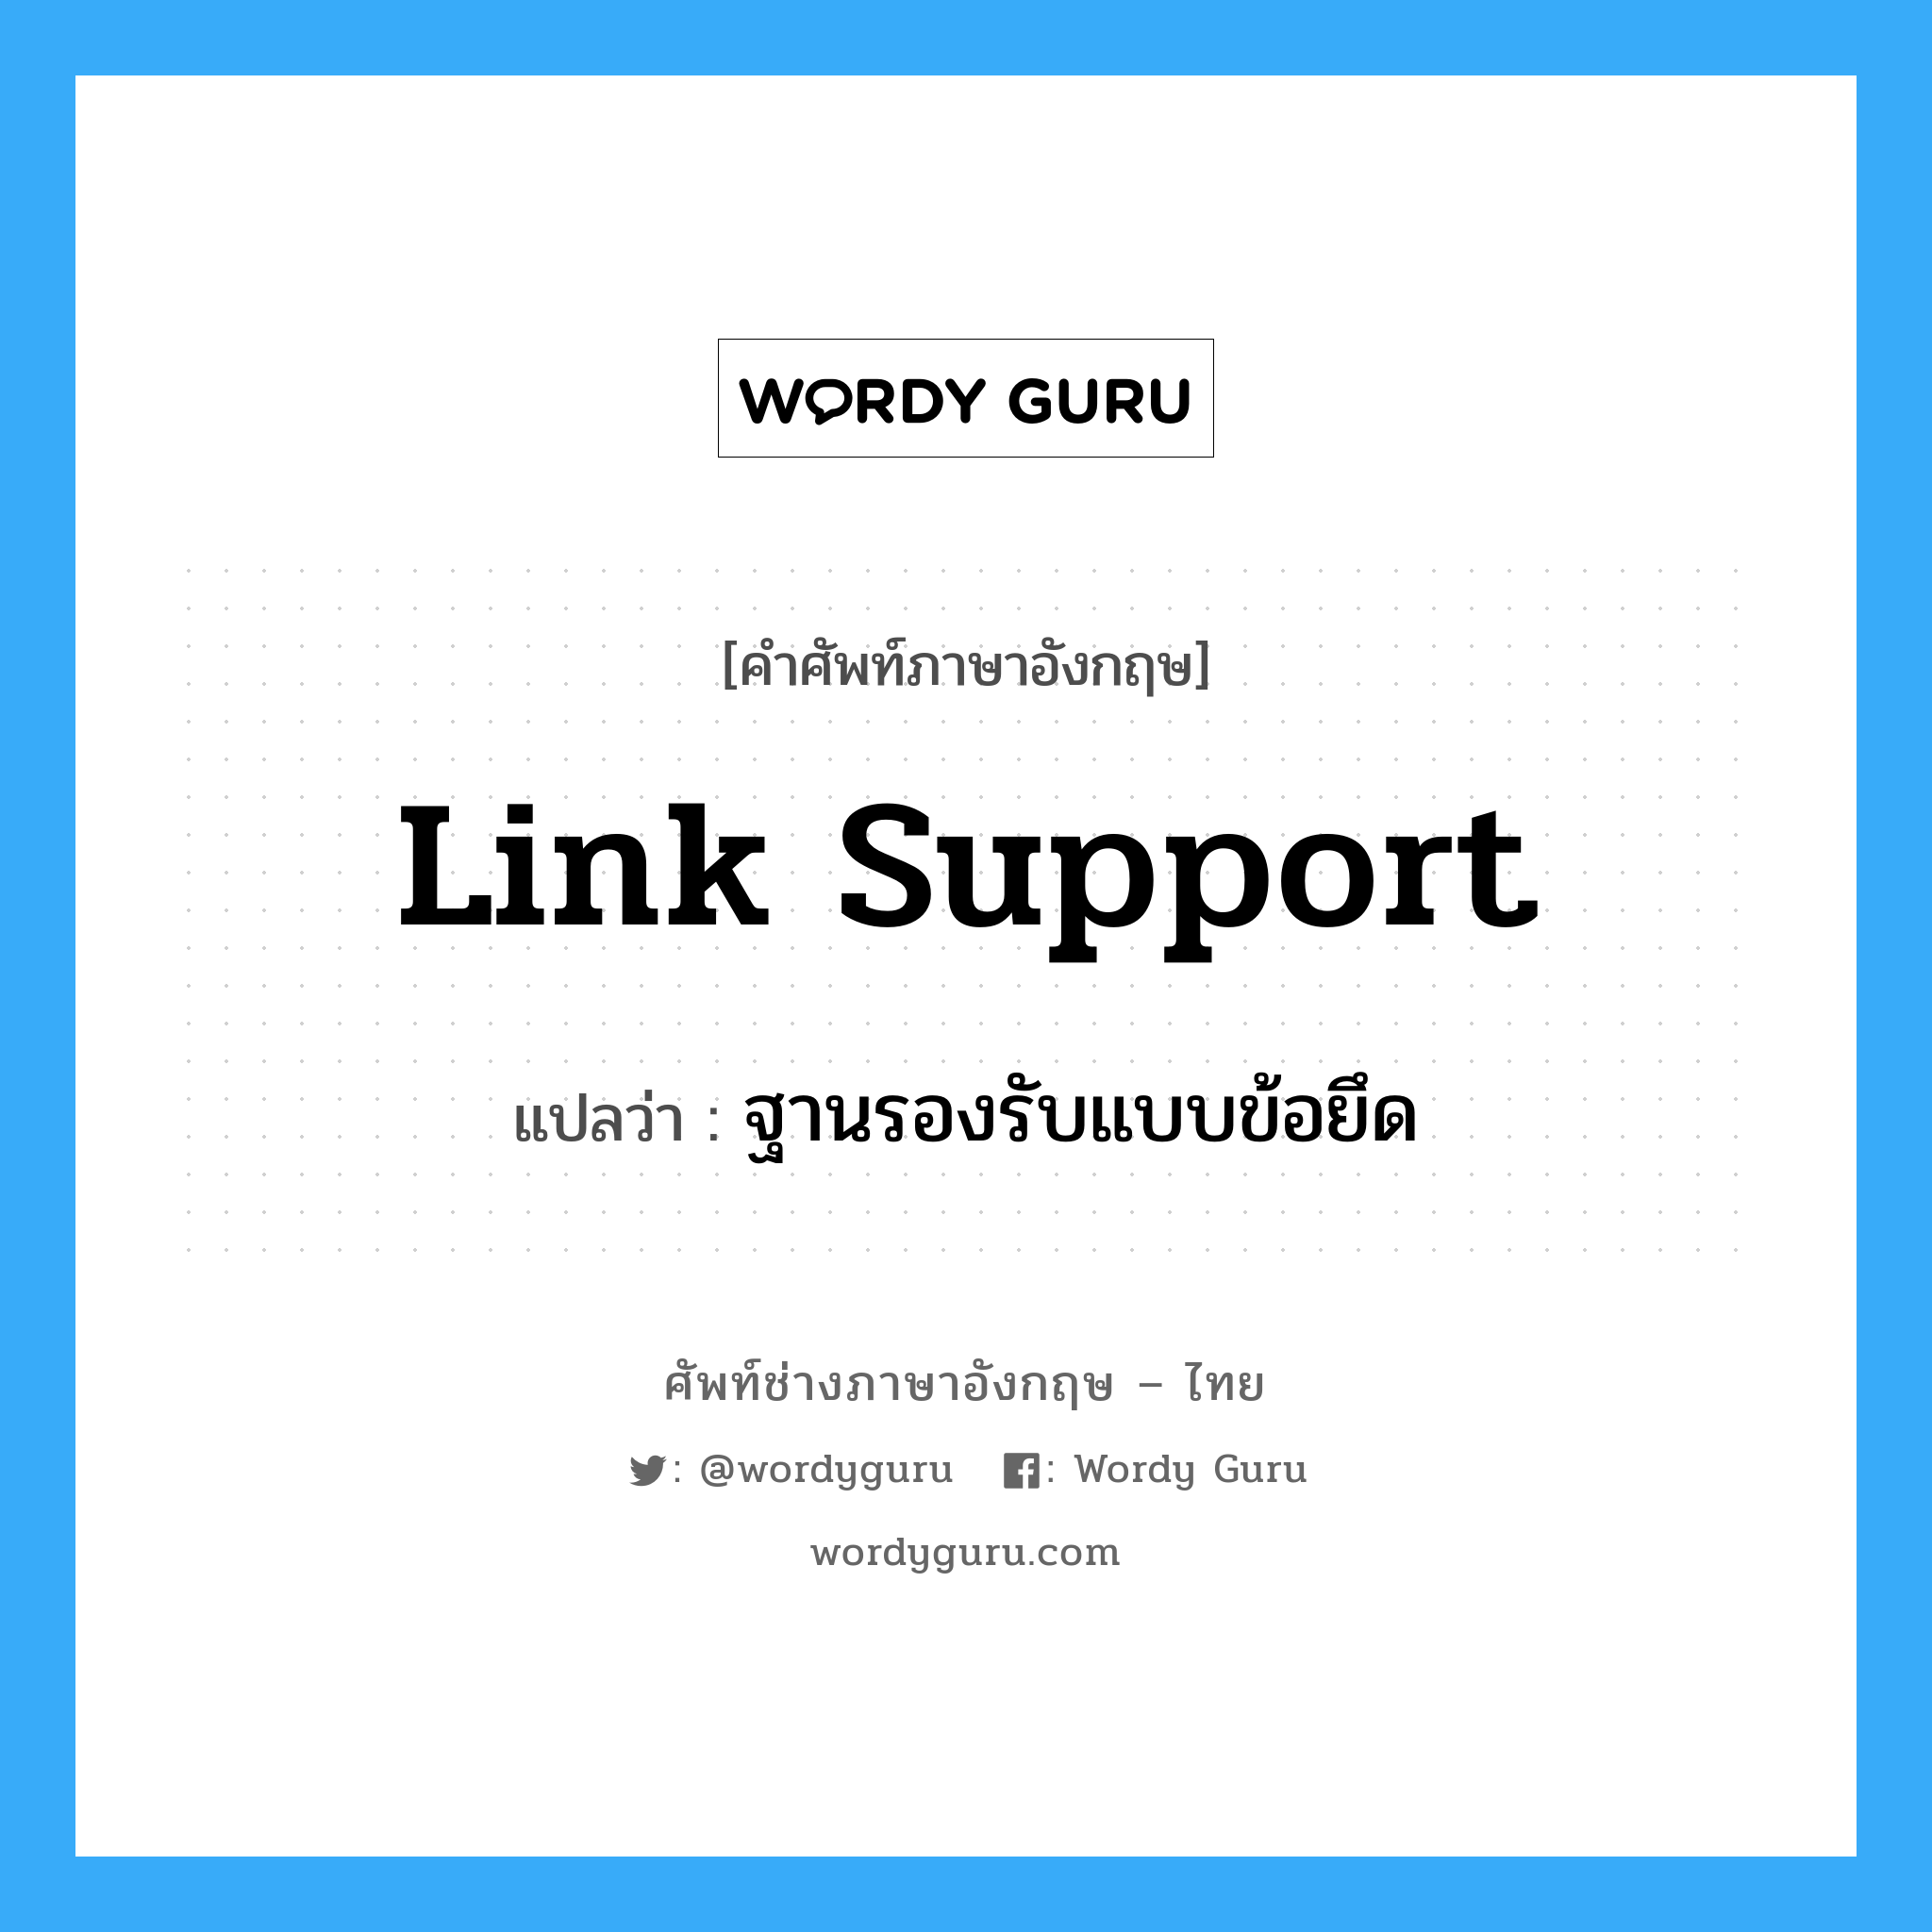 Link Support แปลว่า?, คำศัพท์ช่างภาษาอังกฤษ - ไทย Link Support คำศัพท์ภาษาอังกฤษ Link Support แปลว่า ฐานรองรับแบบข้อยึด